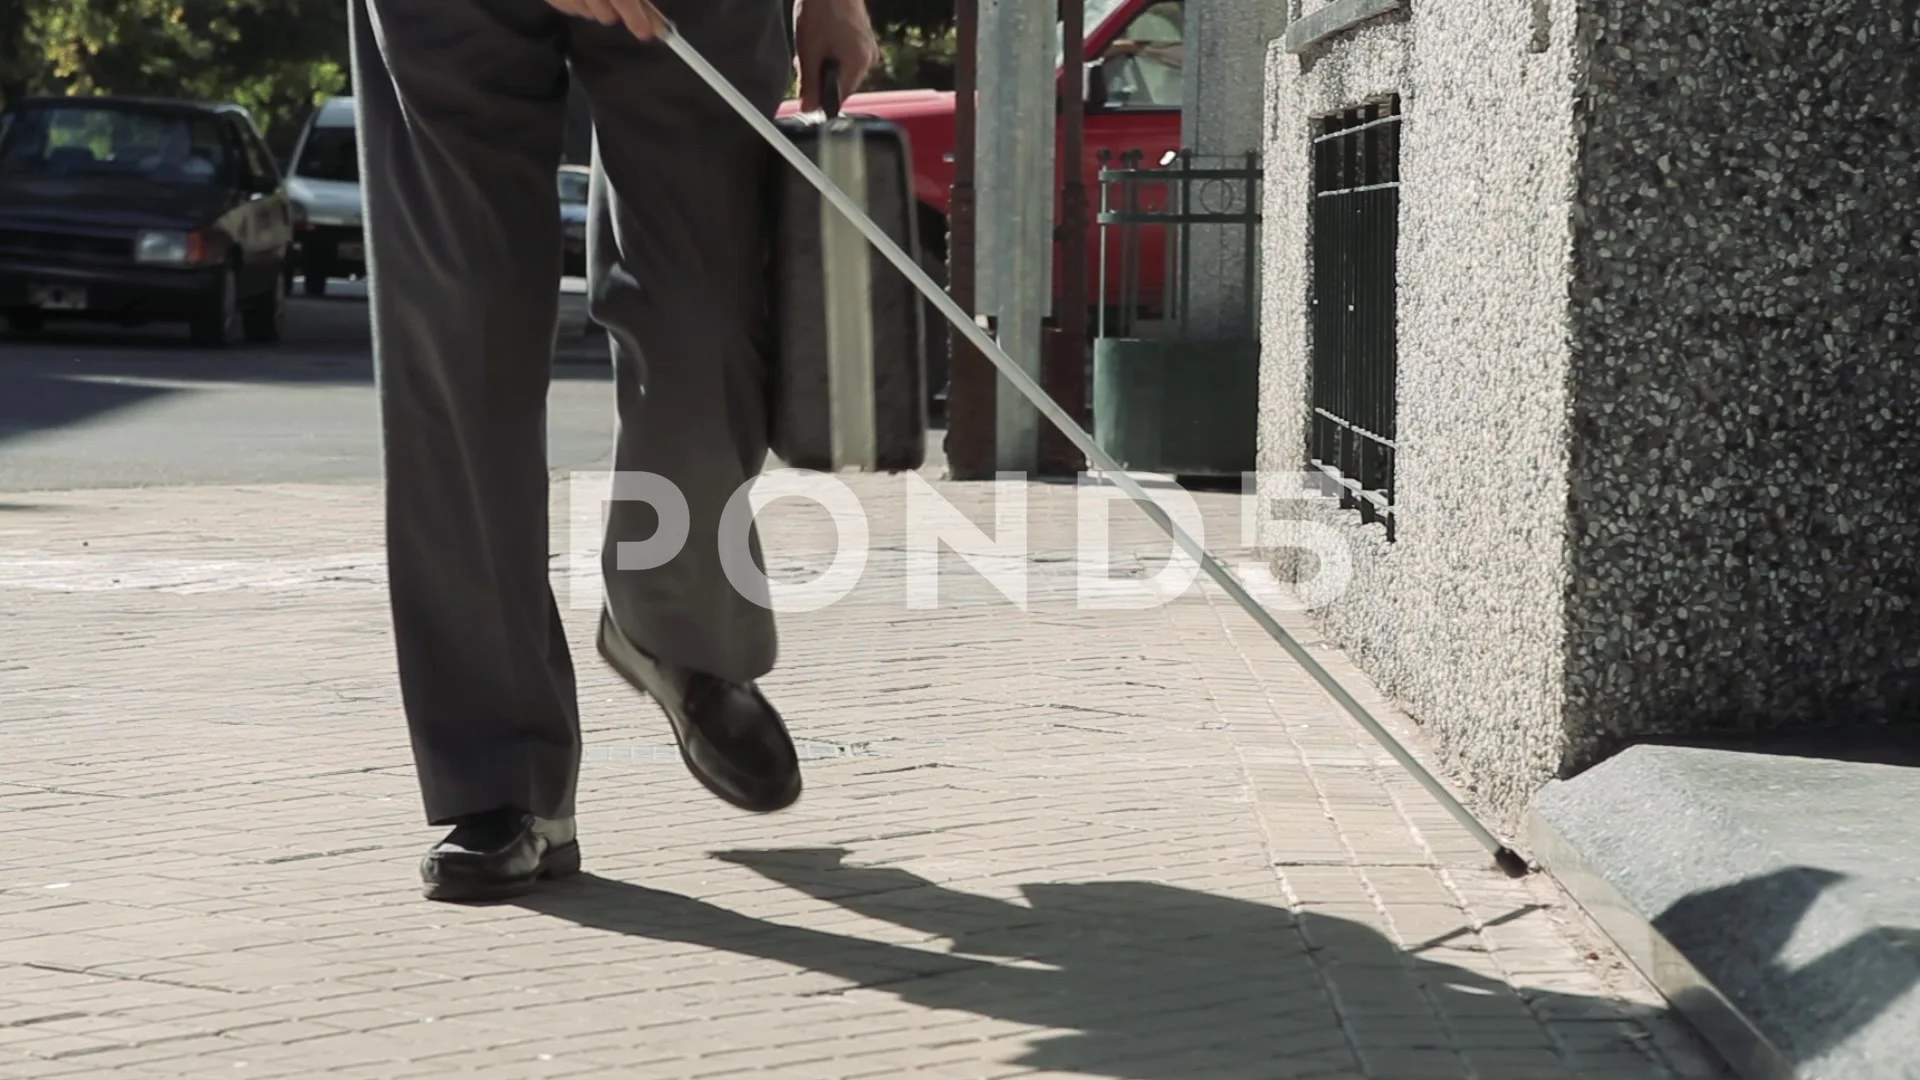 https://images.pond5.com/blind-man-cane-walking-sidewalk-107962764_prevstill.jpeg